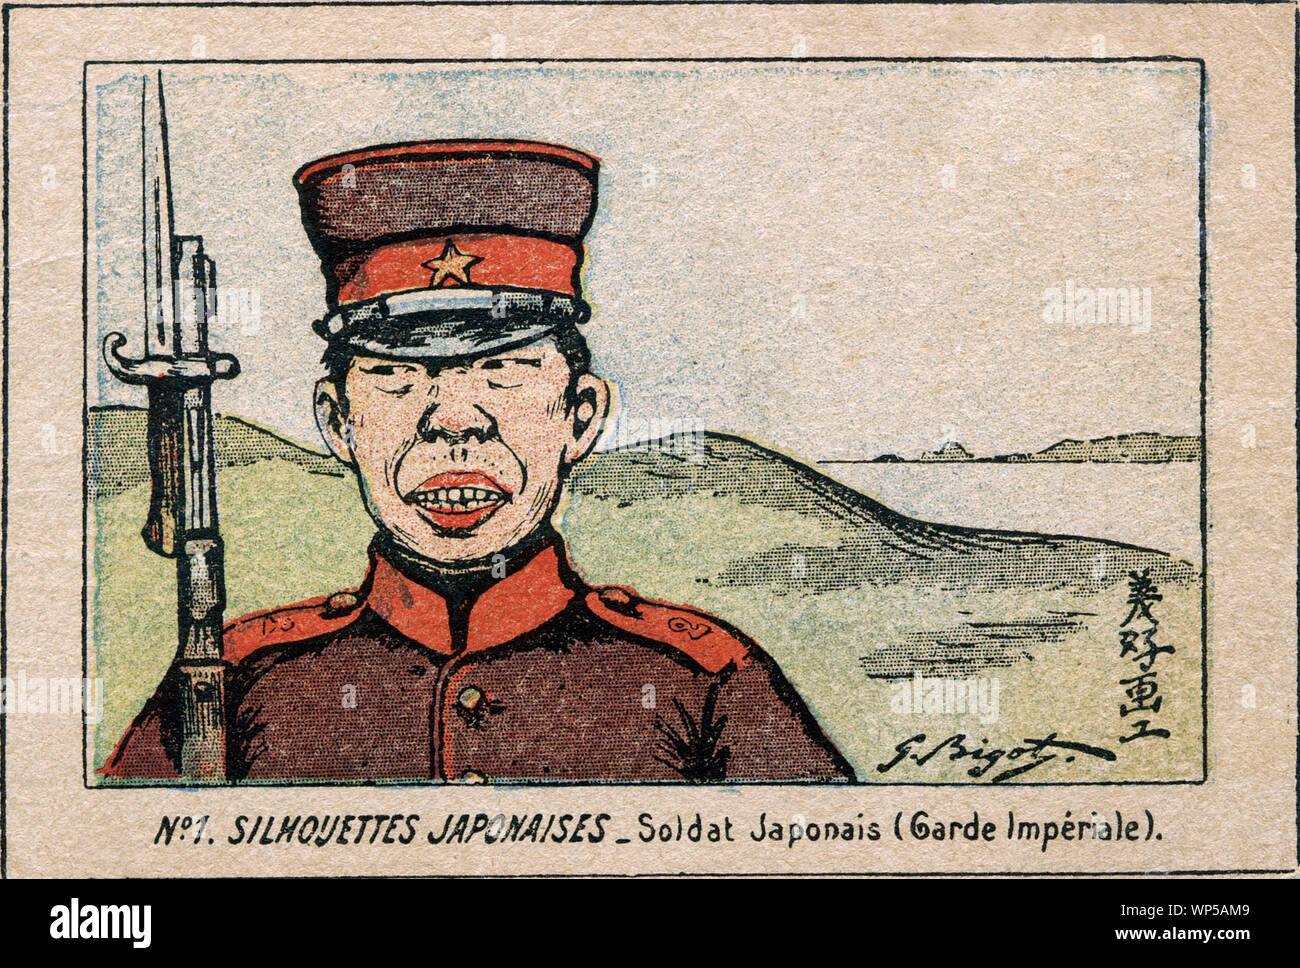 [ 1900 Giappone - soldato giapponese da artisti francesi George razzista ] - soldato giapponese. Illustrazione di artista francese e caricaturista Georges Bigot (1860 - 1927). Il lavoro è intitolato "No.1 SAGOME JAPONAISES - Soldat Japonais (Garde Imperiale)." novecento cartolina vintage. Foto Stock